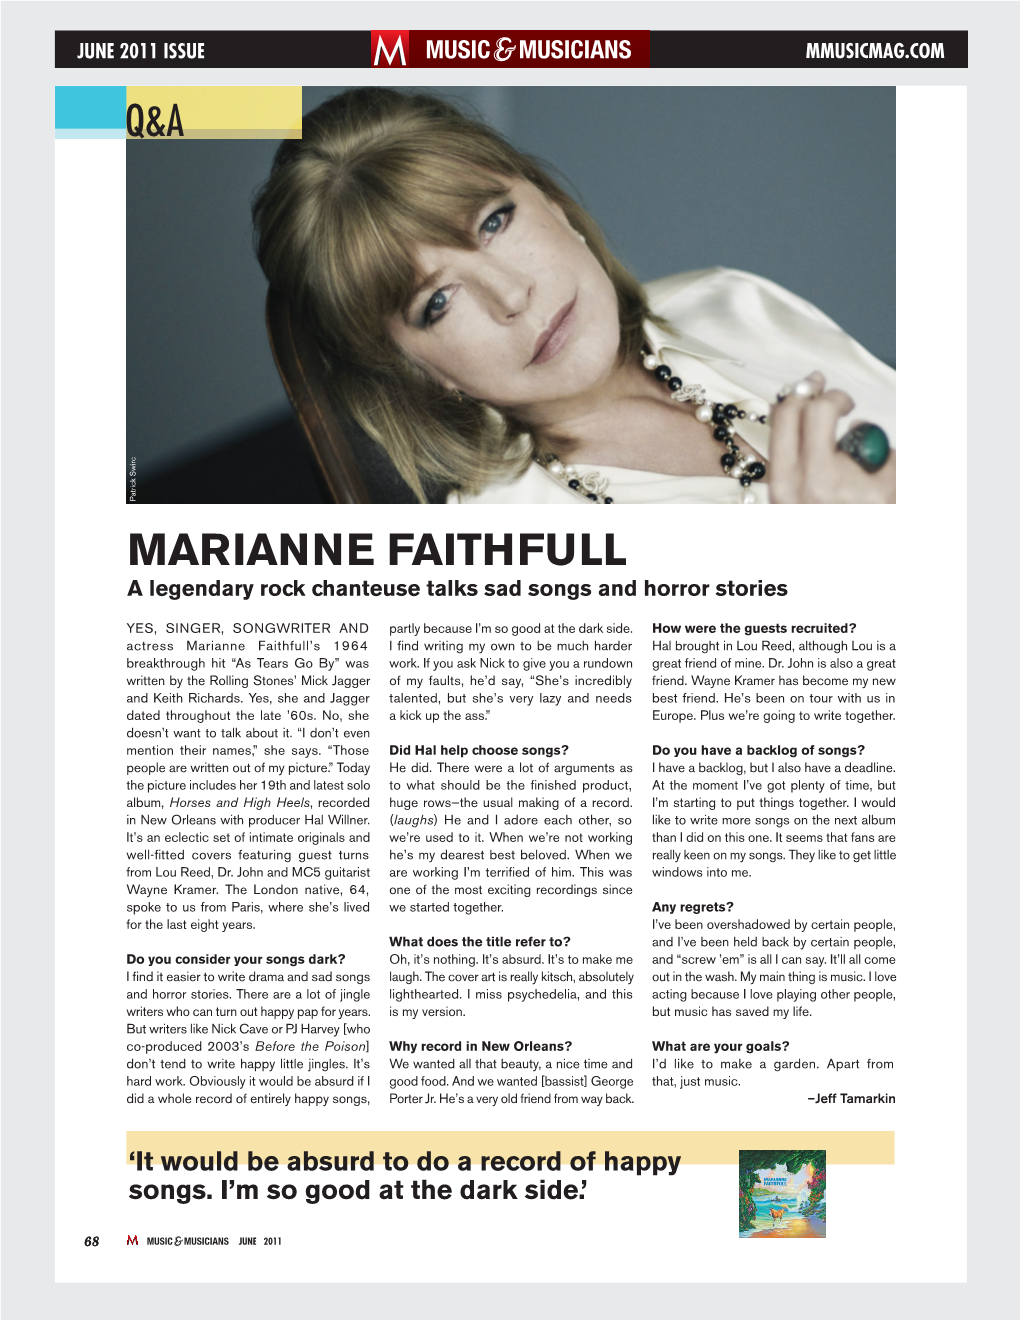 MARIANNE FAITHFULL a Legendary Rock Chanteuse Talks Sad Songs and Horror Stories